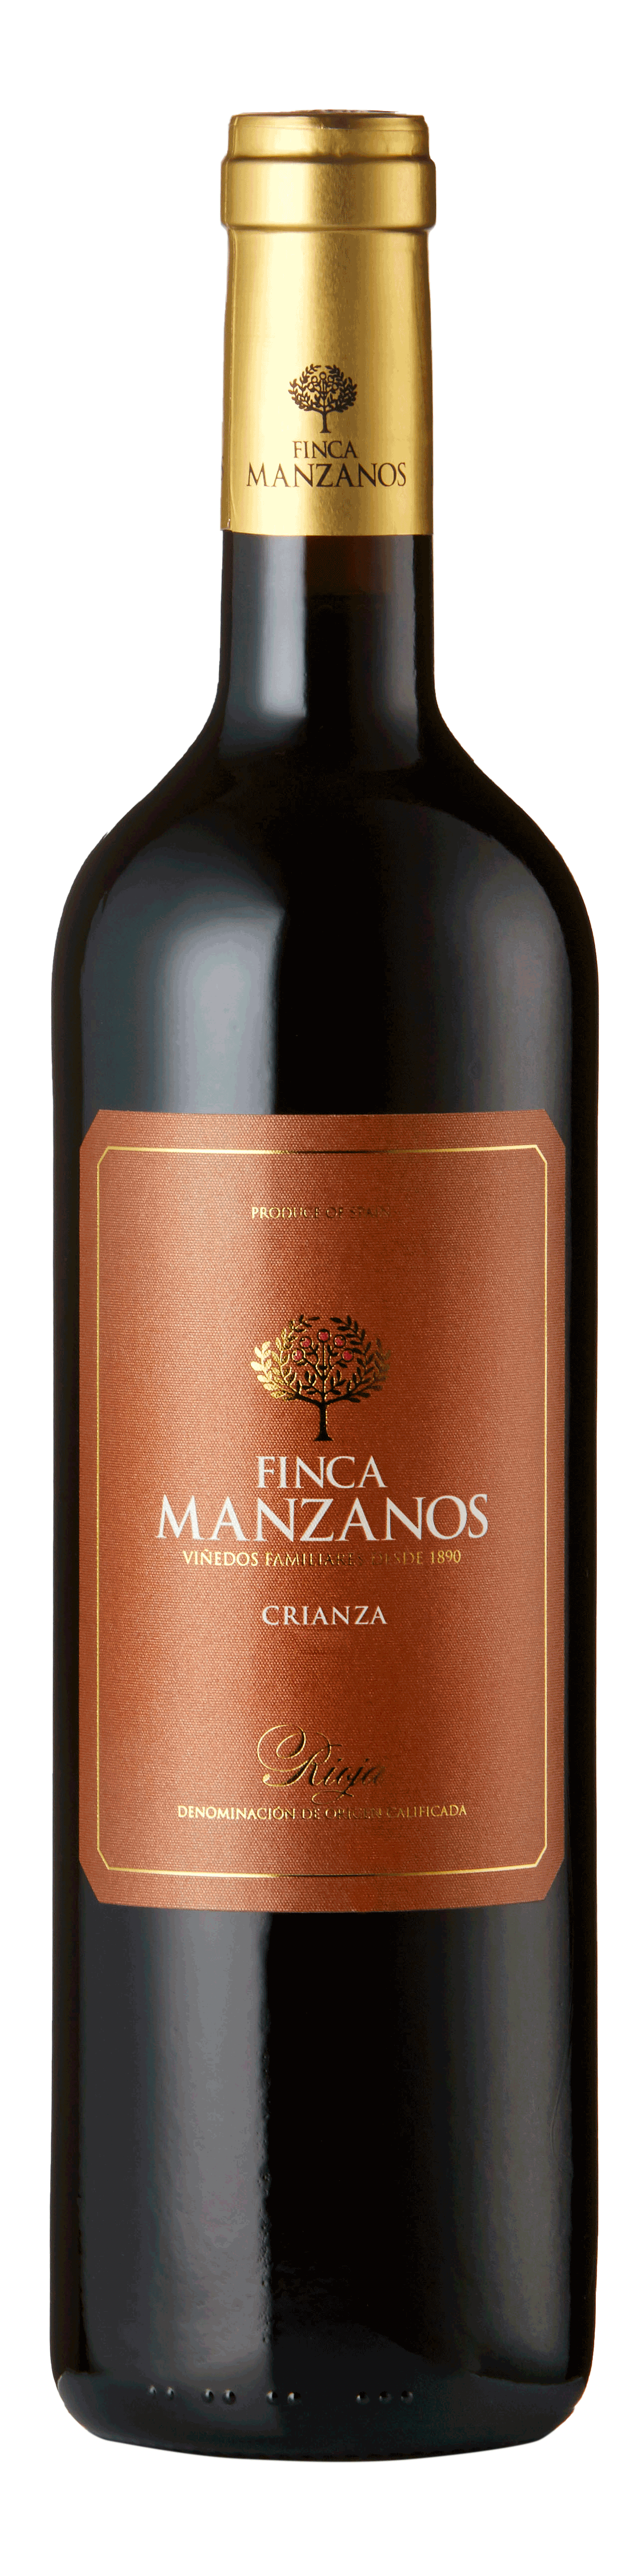 Bottle shot - Bodegas Manzanos, Finca Manzanos Crianza, DOCa Rioja, Spain